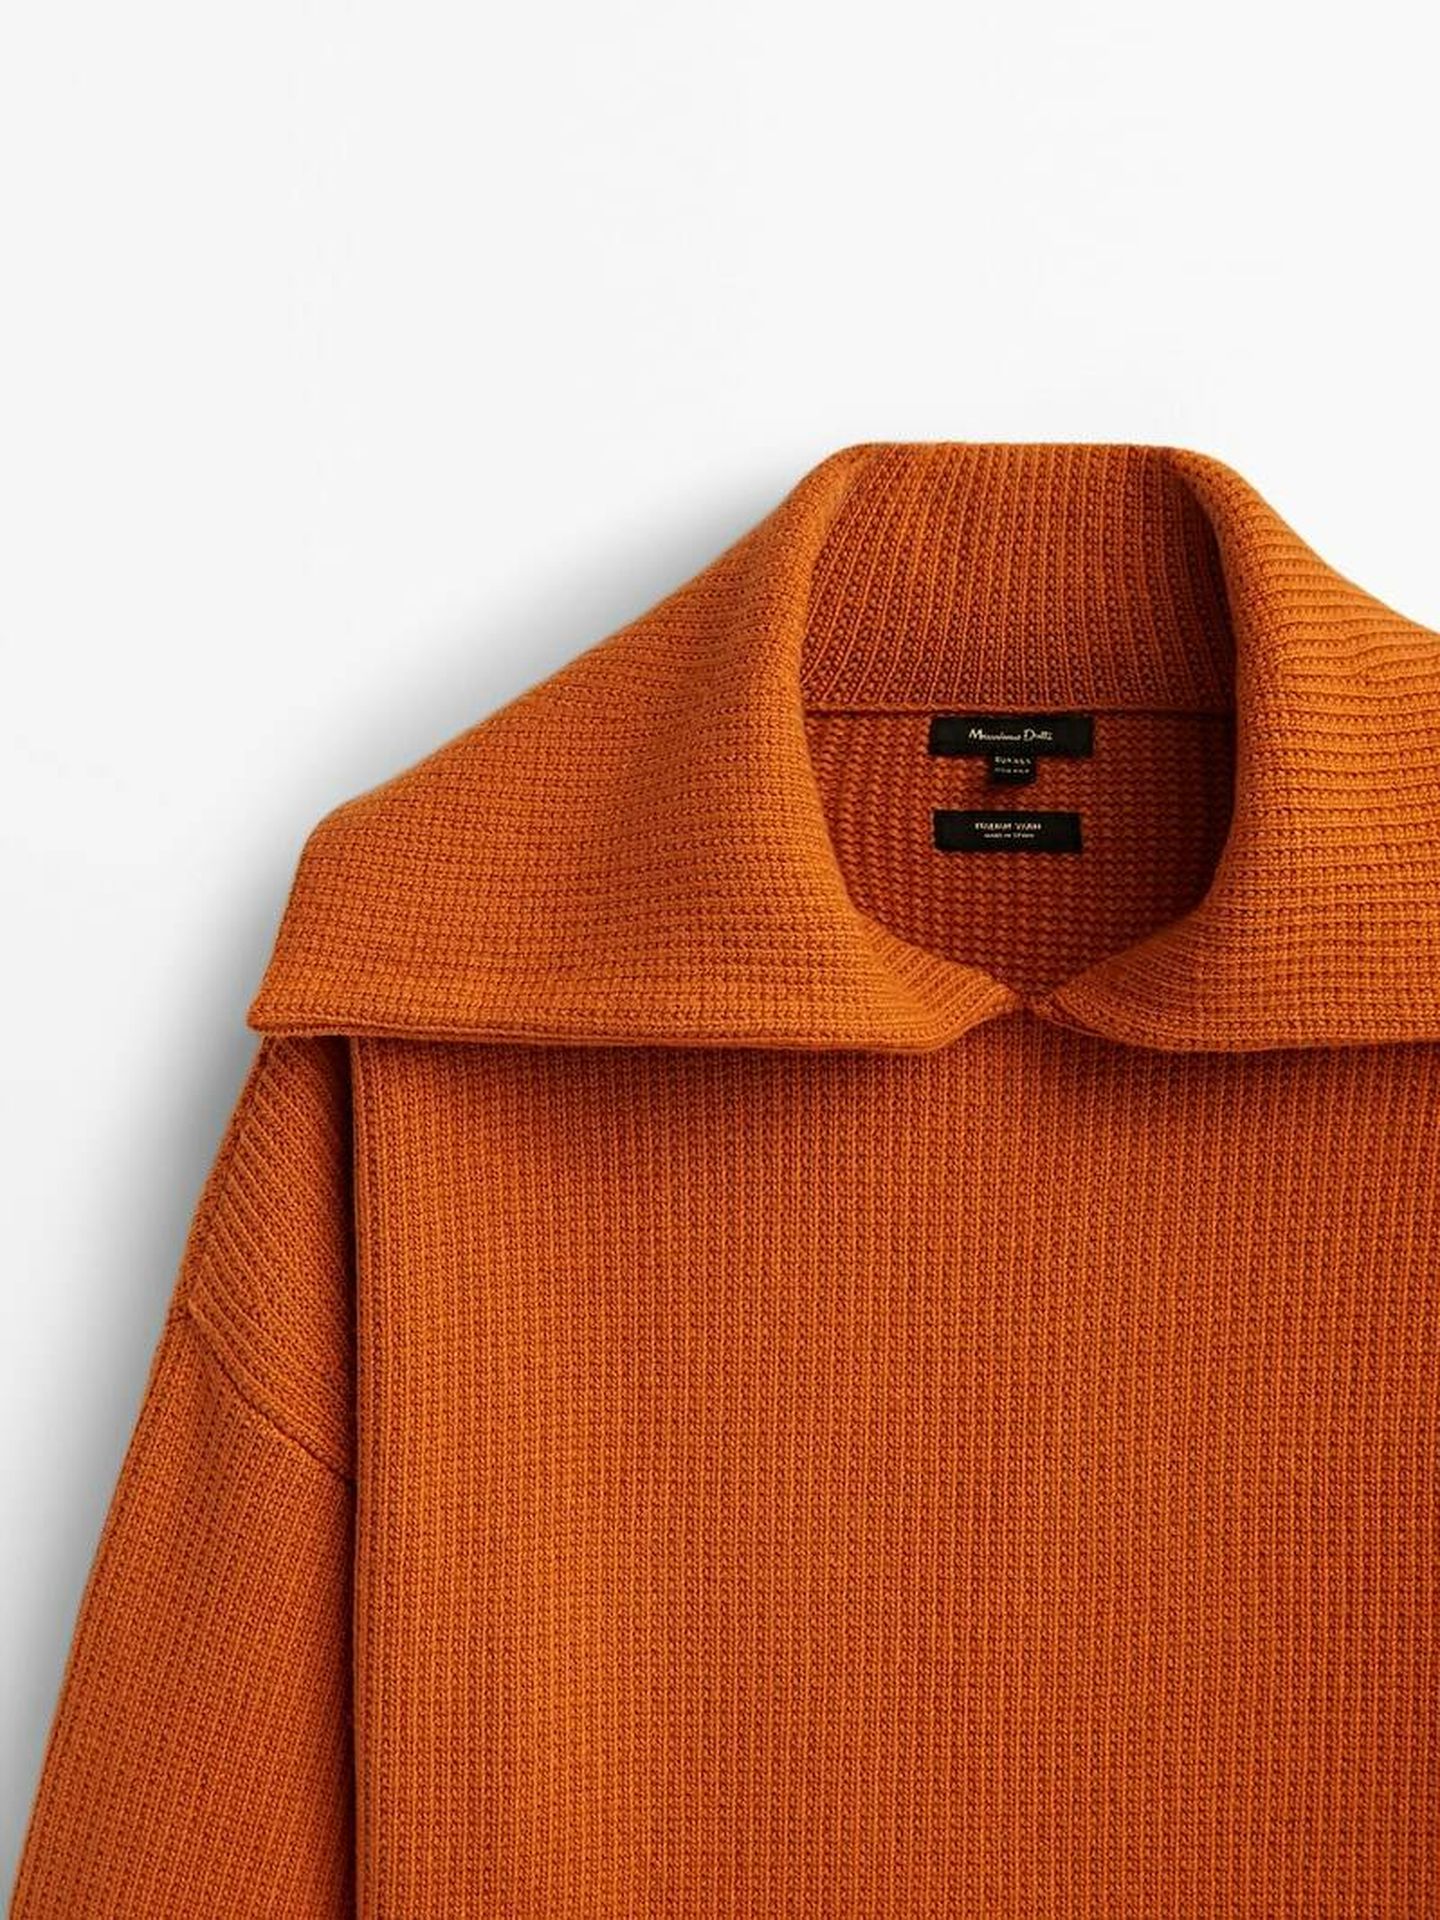 Jersey naranja 'made in Spain'. (Massimo Dutti/Cortesía)